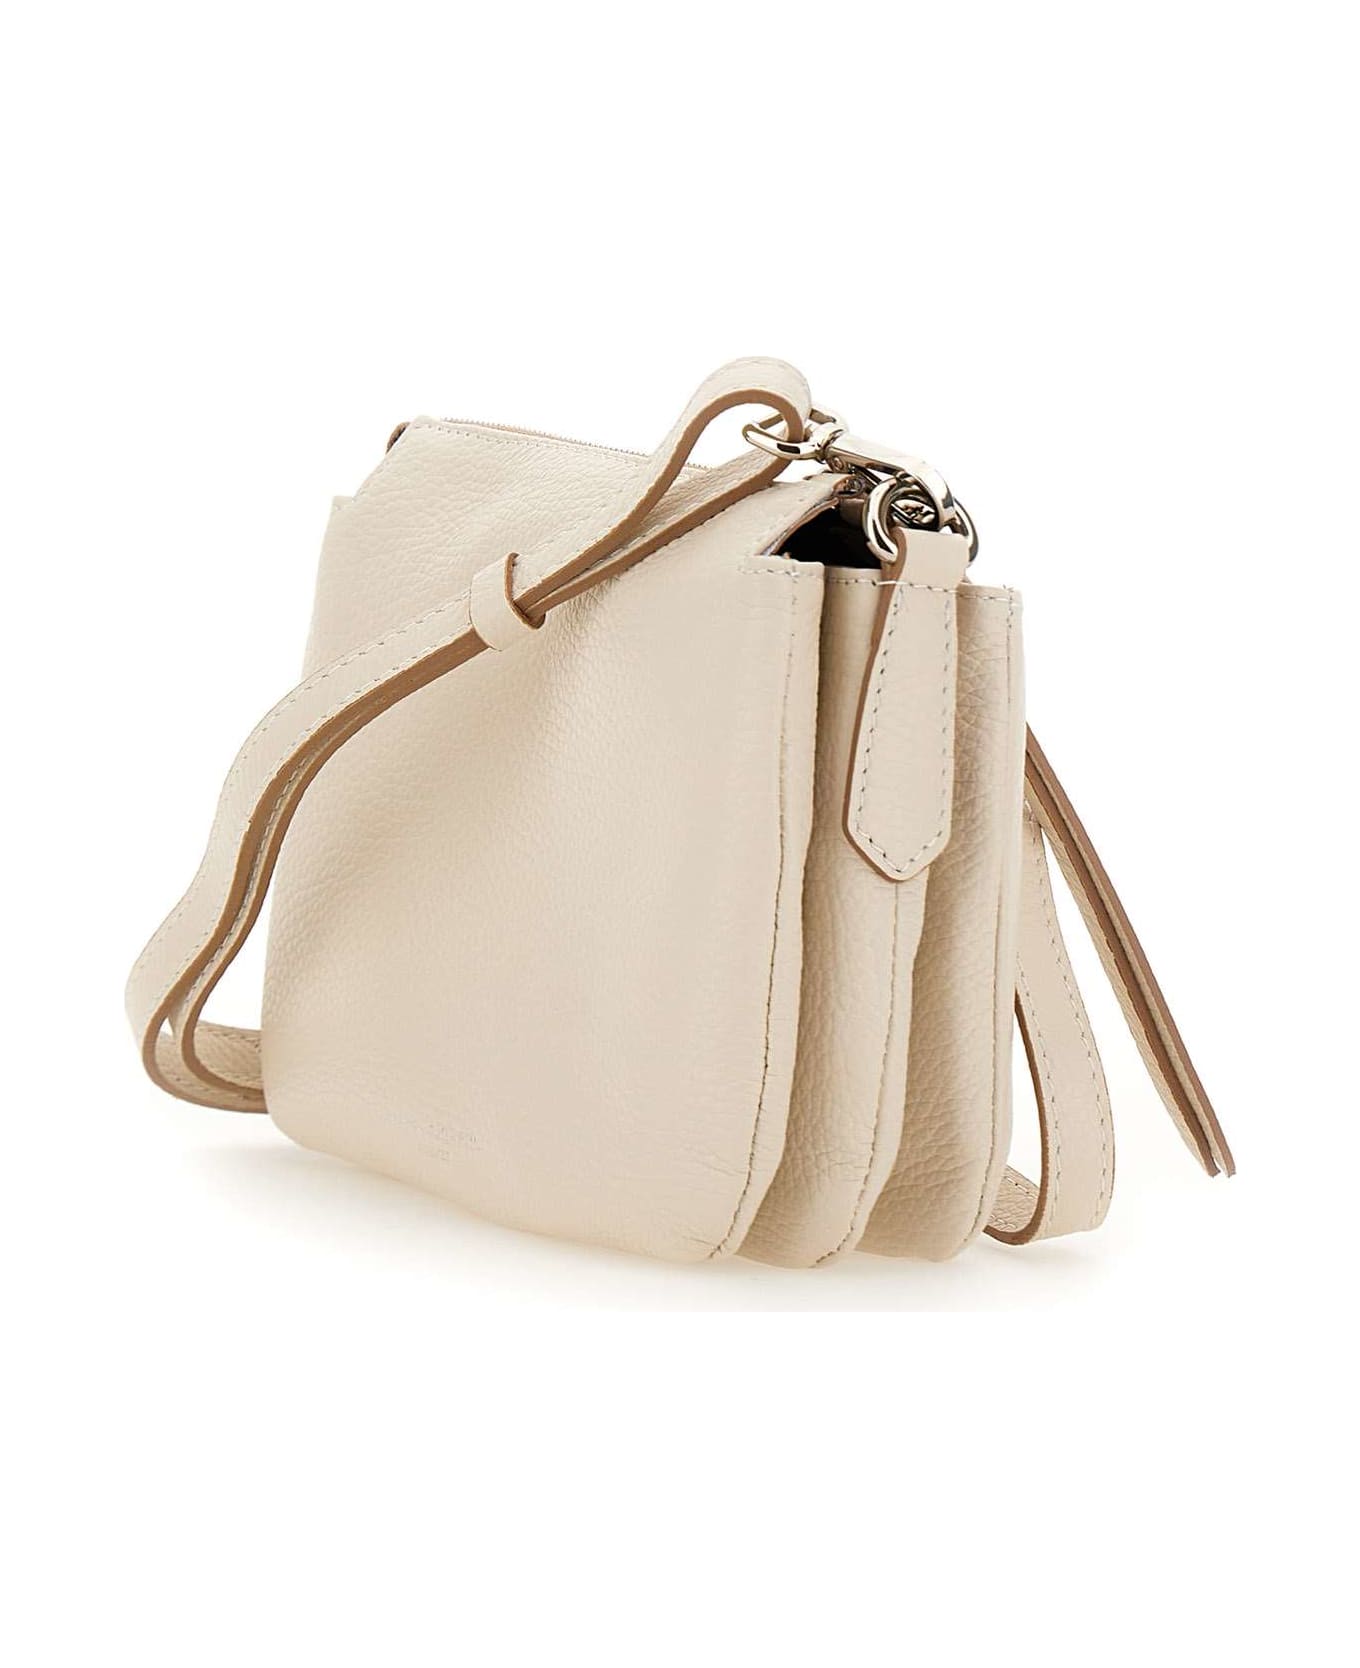 Gianni Chiarini "three" Leather Bag - WHITE